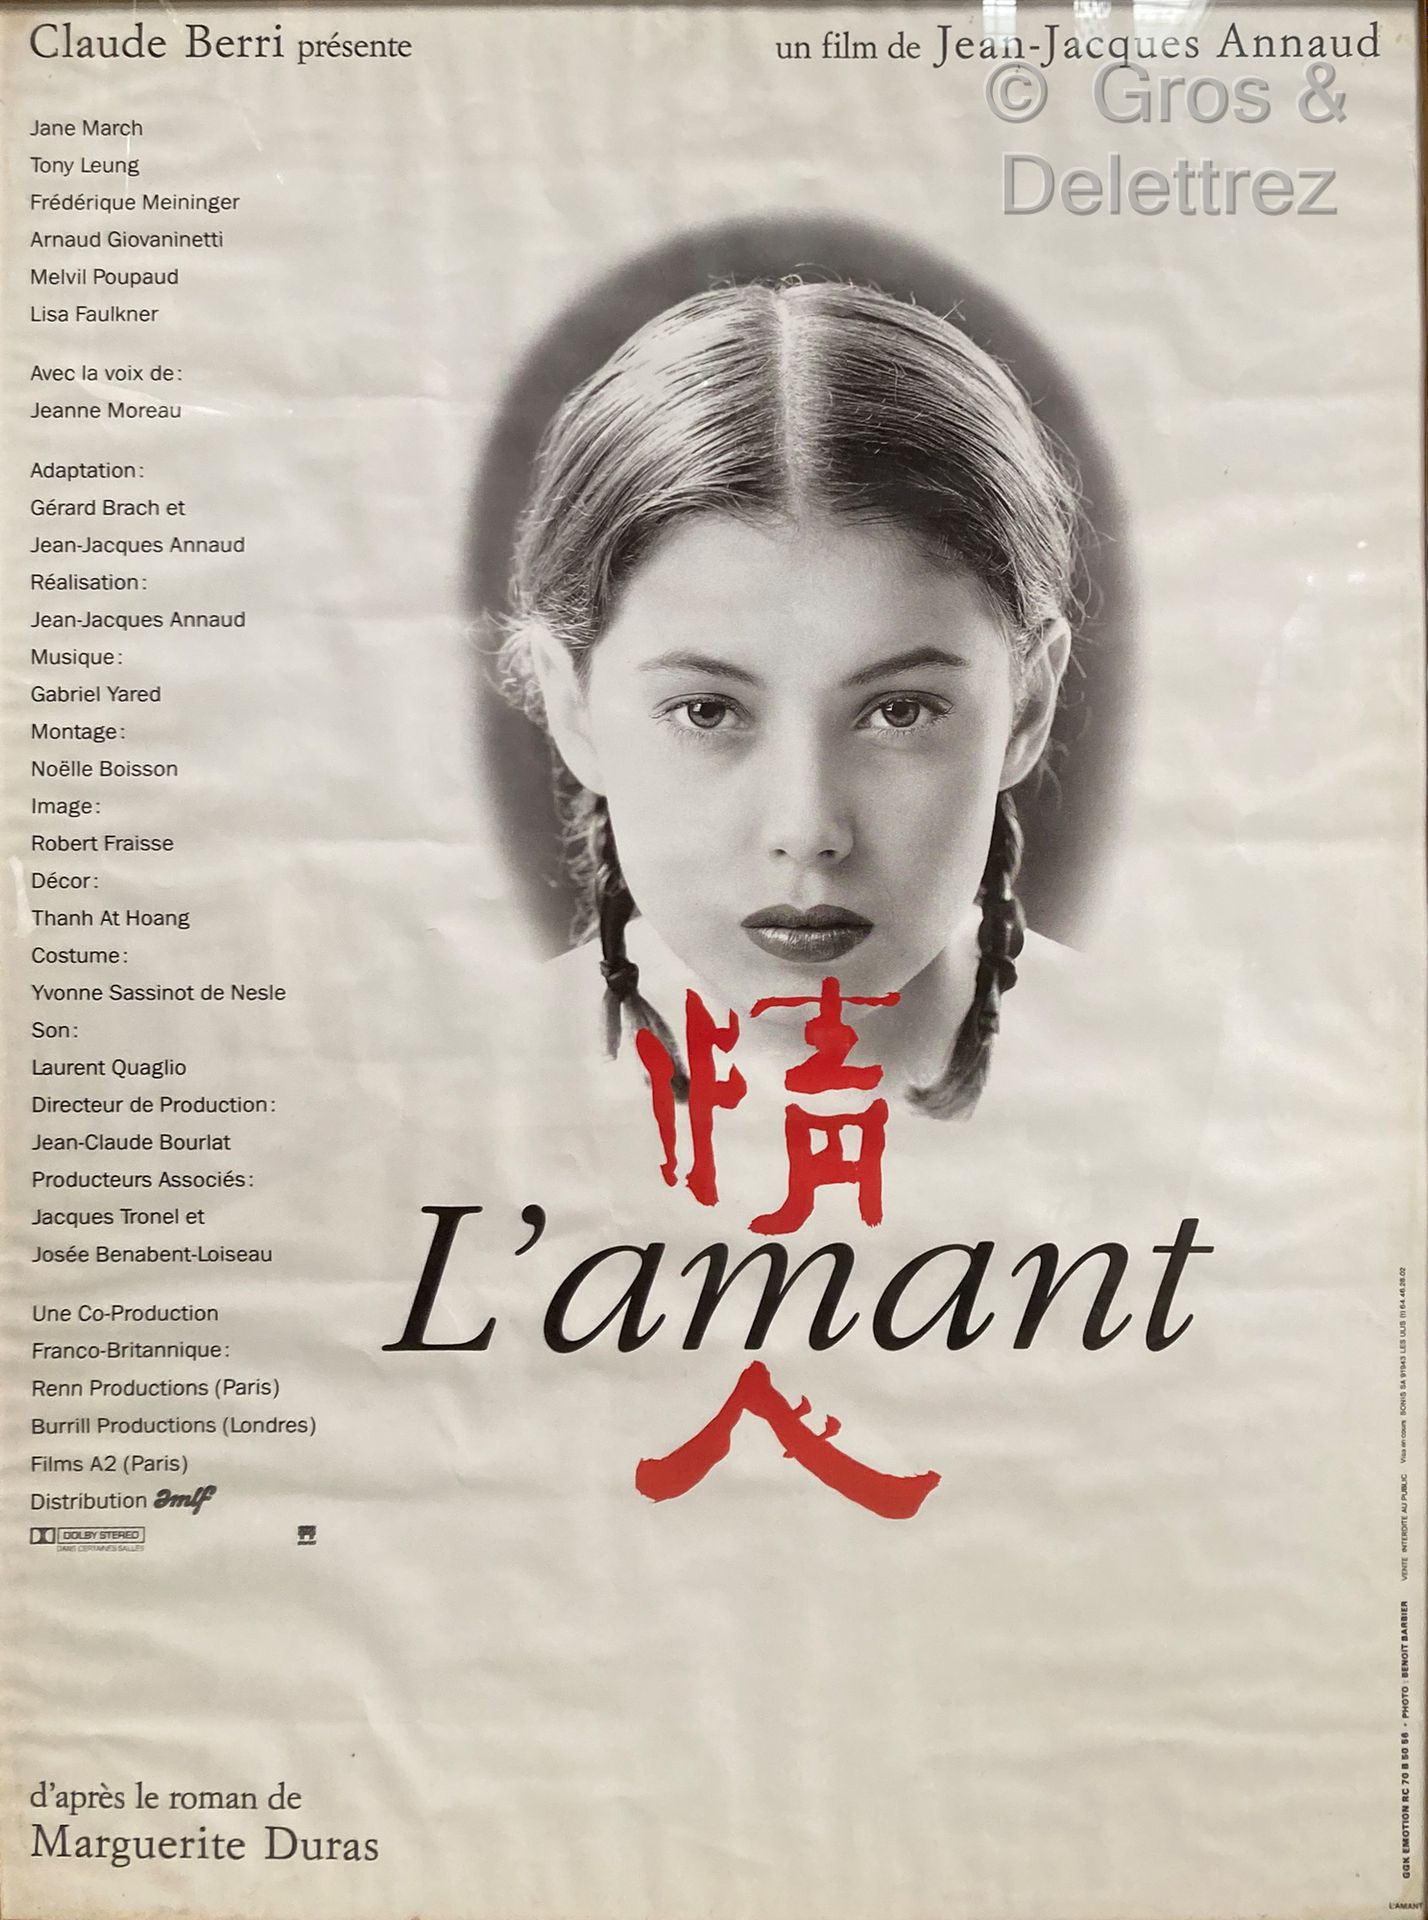 Jean-Jacques ANNAUD EL AMANTE

Cartel de la película

78 x 57 cm bajo vidrio